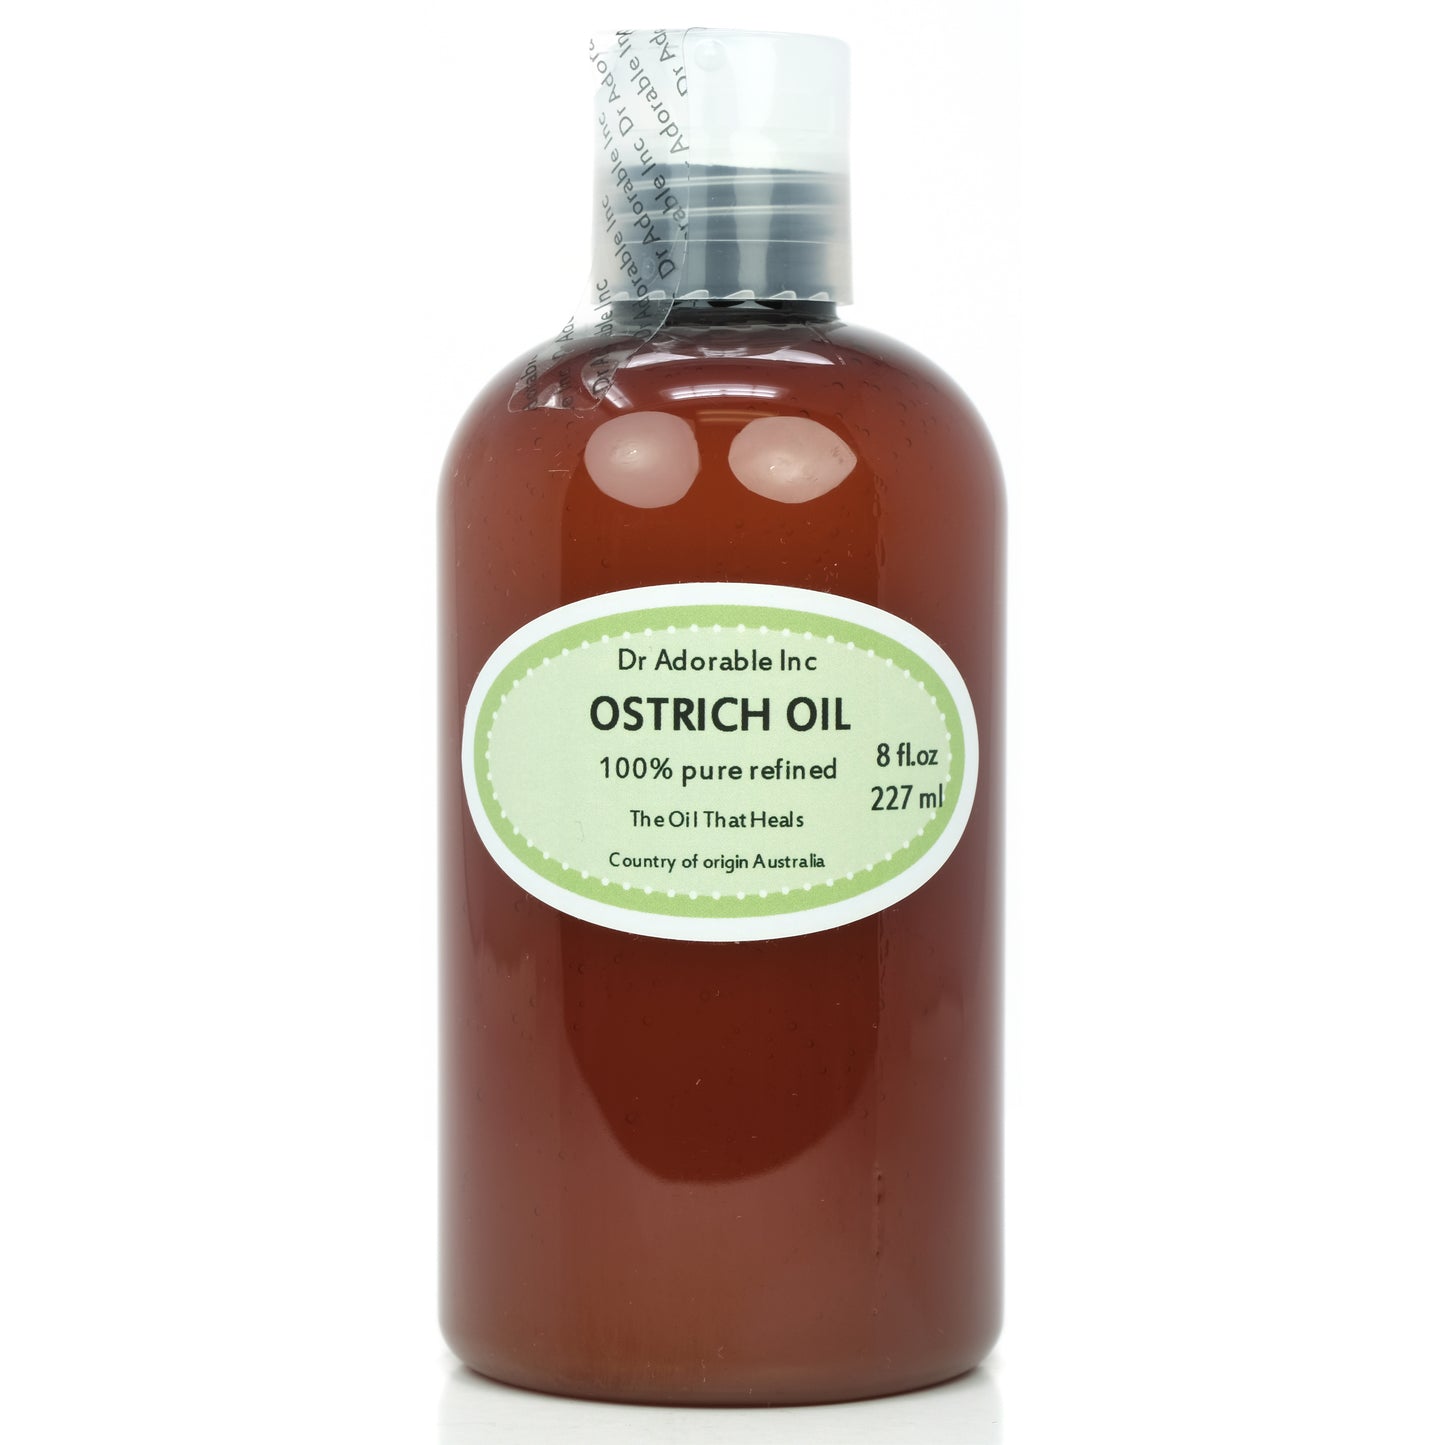 Ostrich Oil - 100% Pure Natural Premium Organic